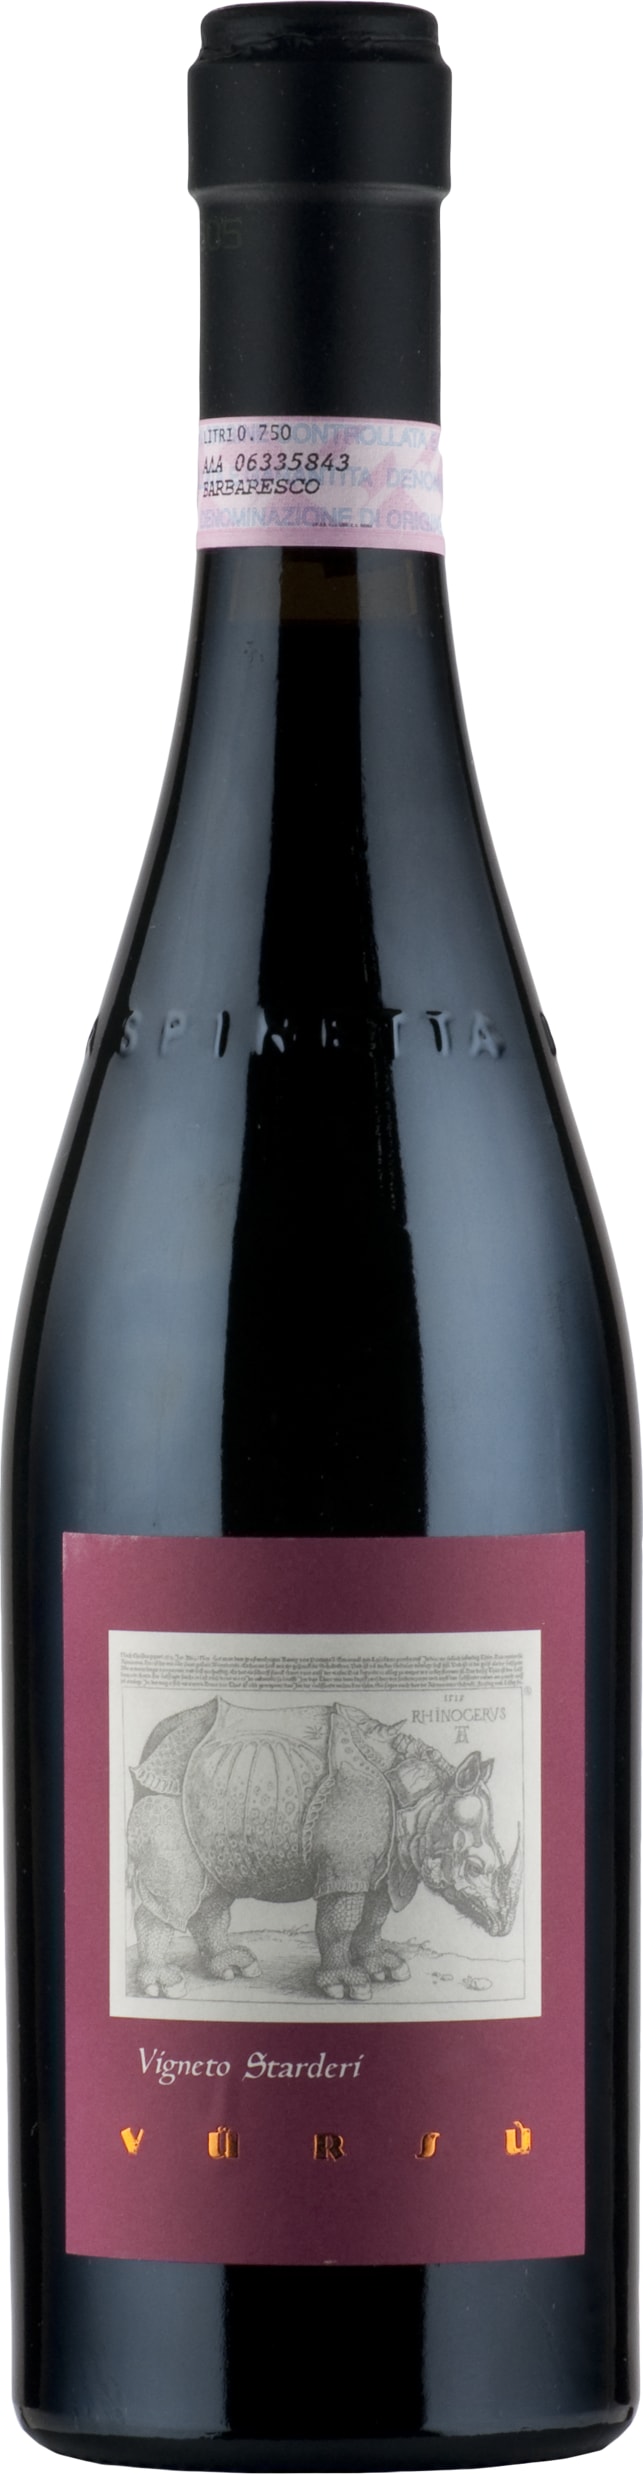 La Spinetta Barbaresco Vigneto Starderi DOCG 2020 75cl - Buy La Spinetta Wines from GREAT WINES DIRECT wine shop